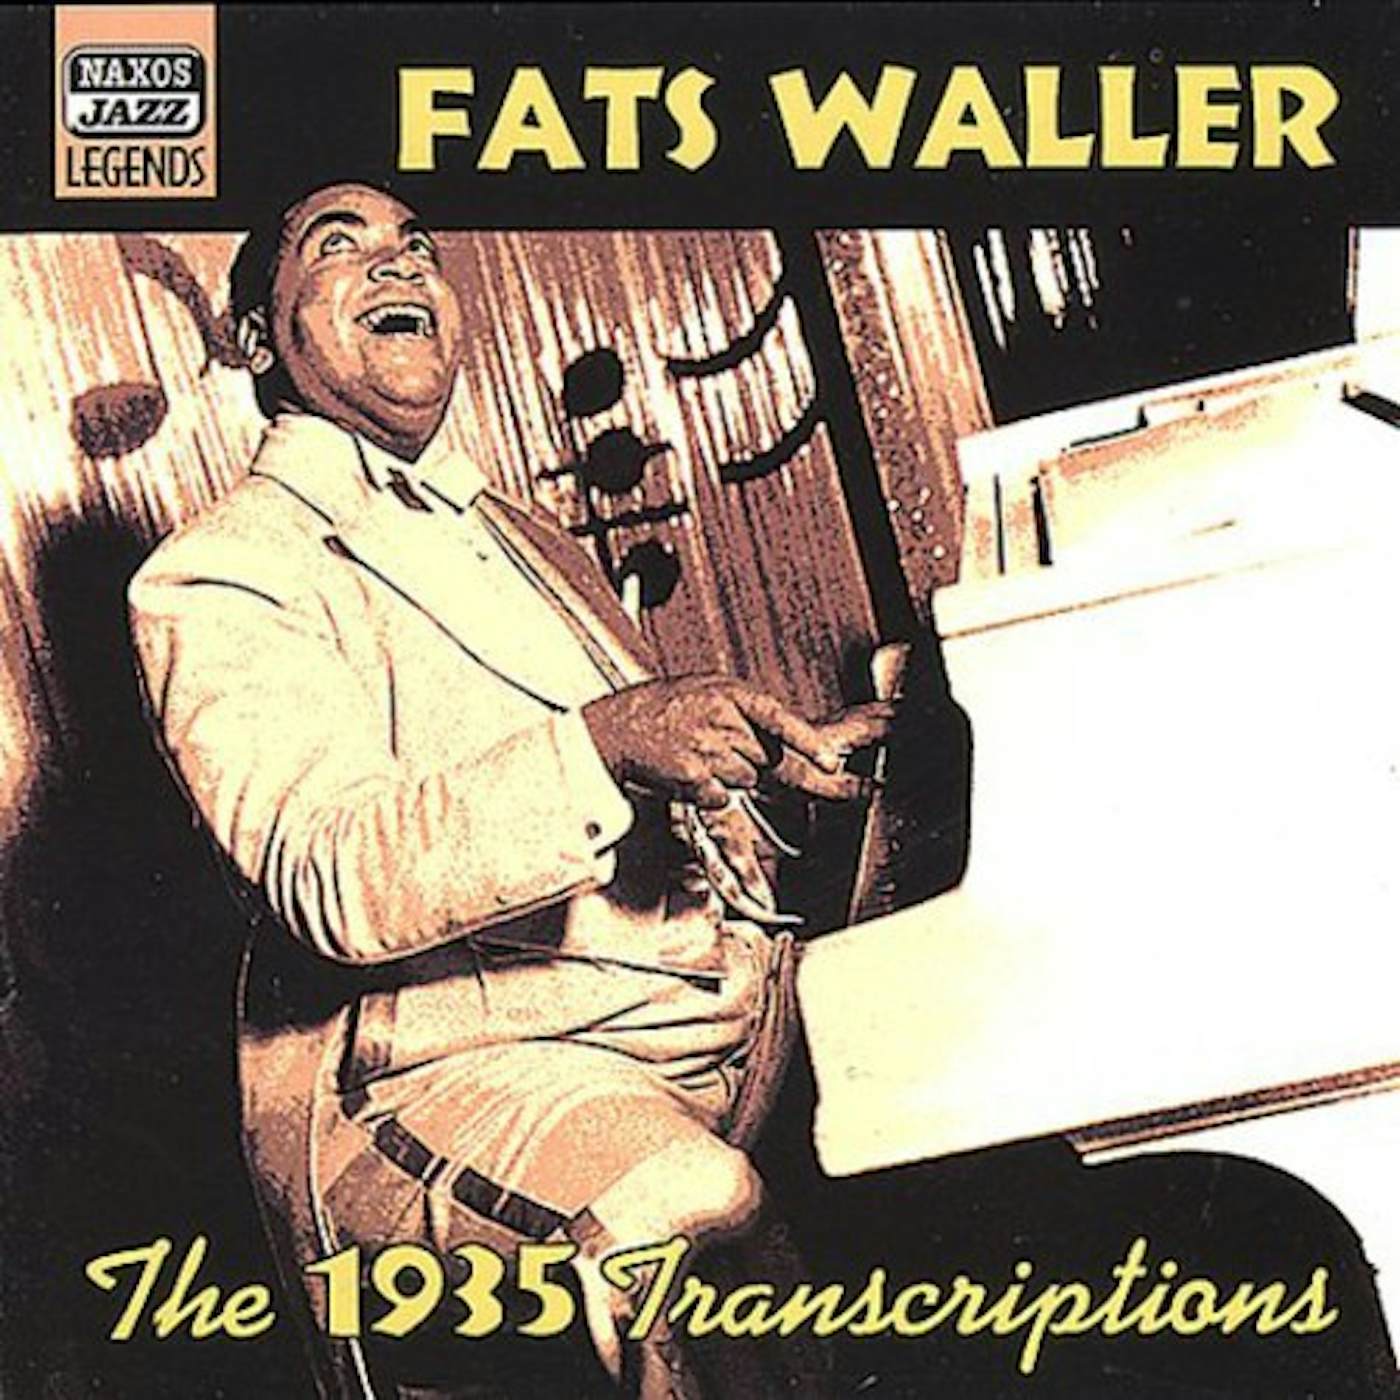 Fats Waller 1935 TRANSCRIPTIONS CD